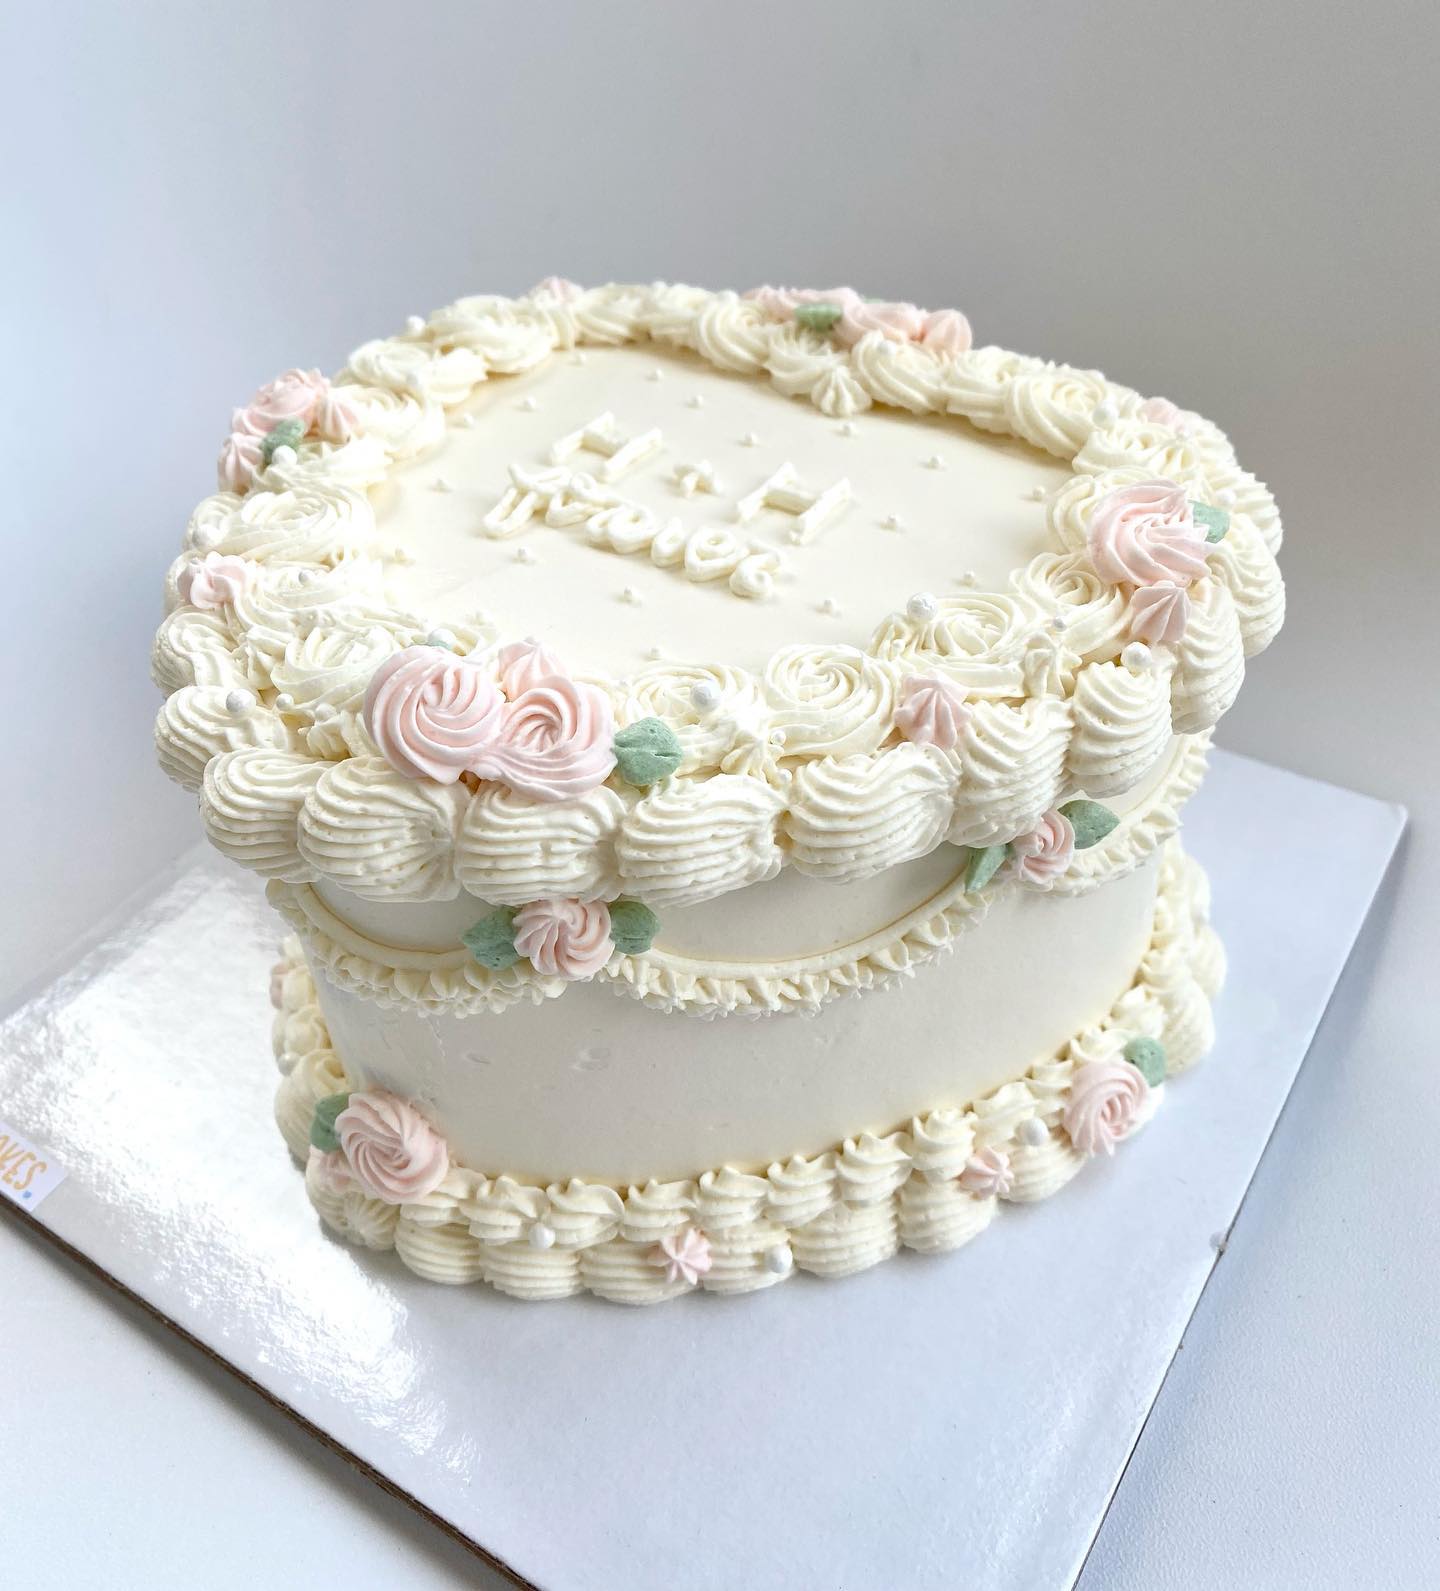 Three step cake |Wedding cake |Engagement Cake - YouTube